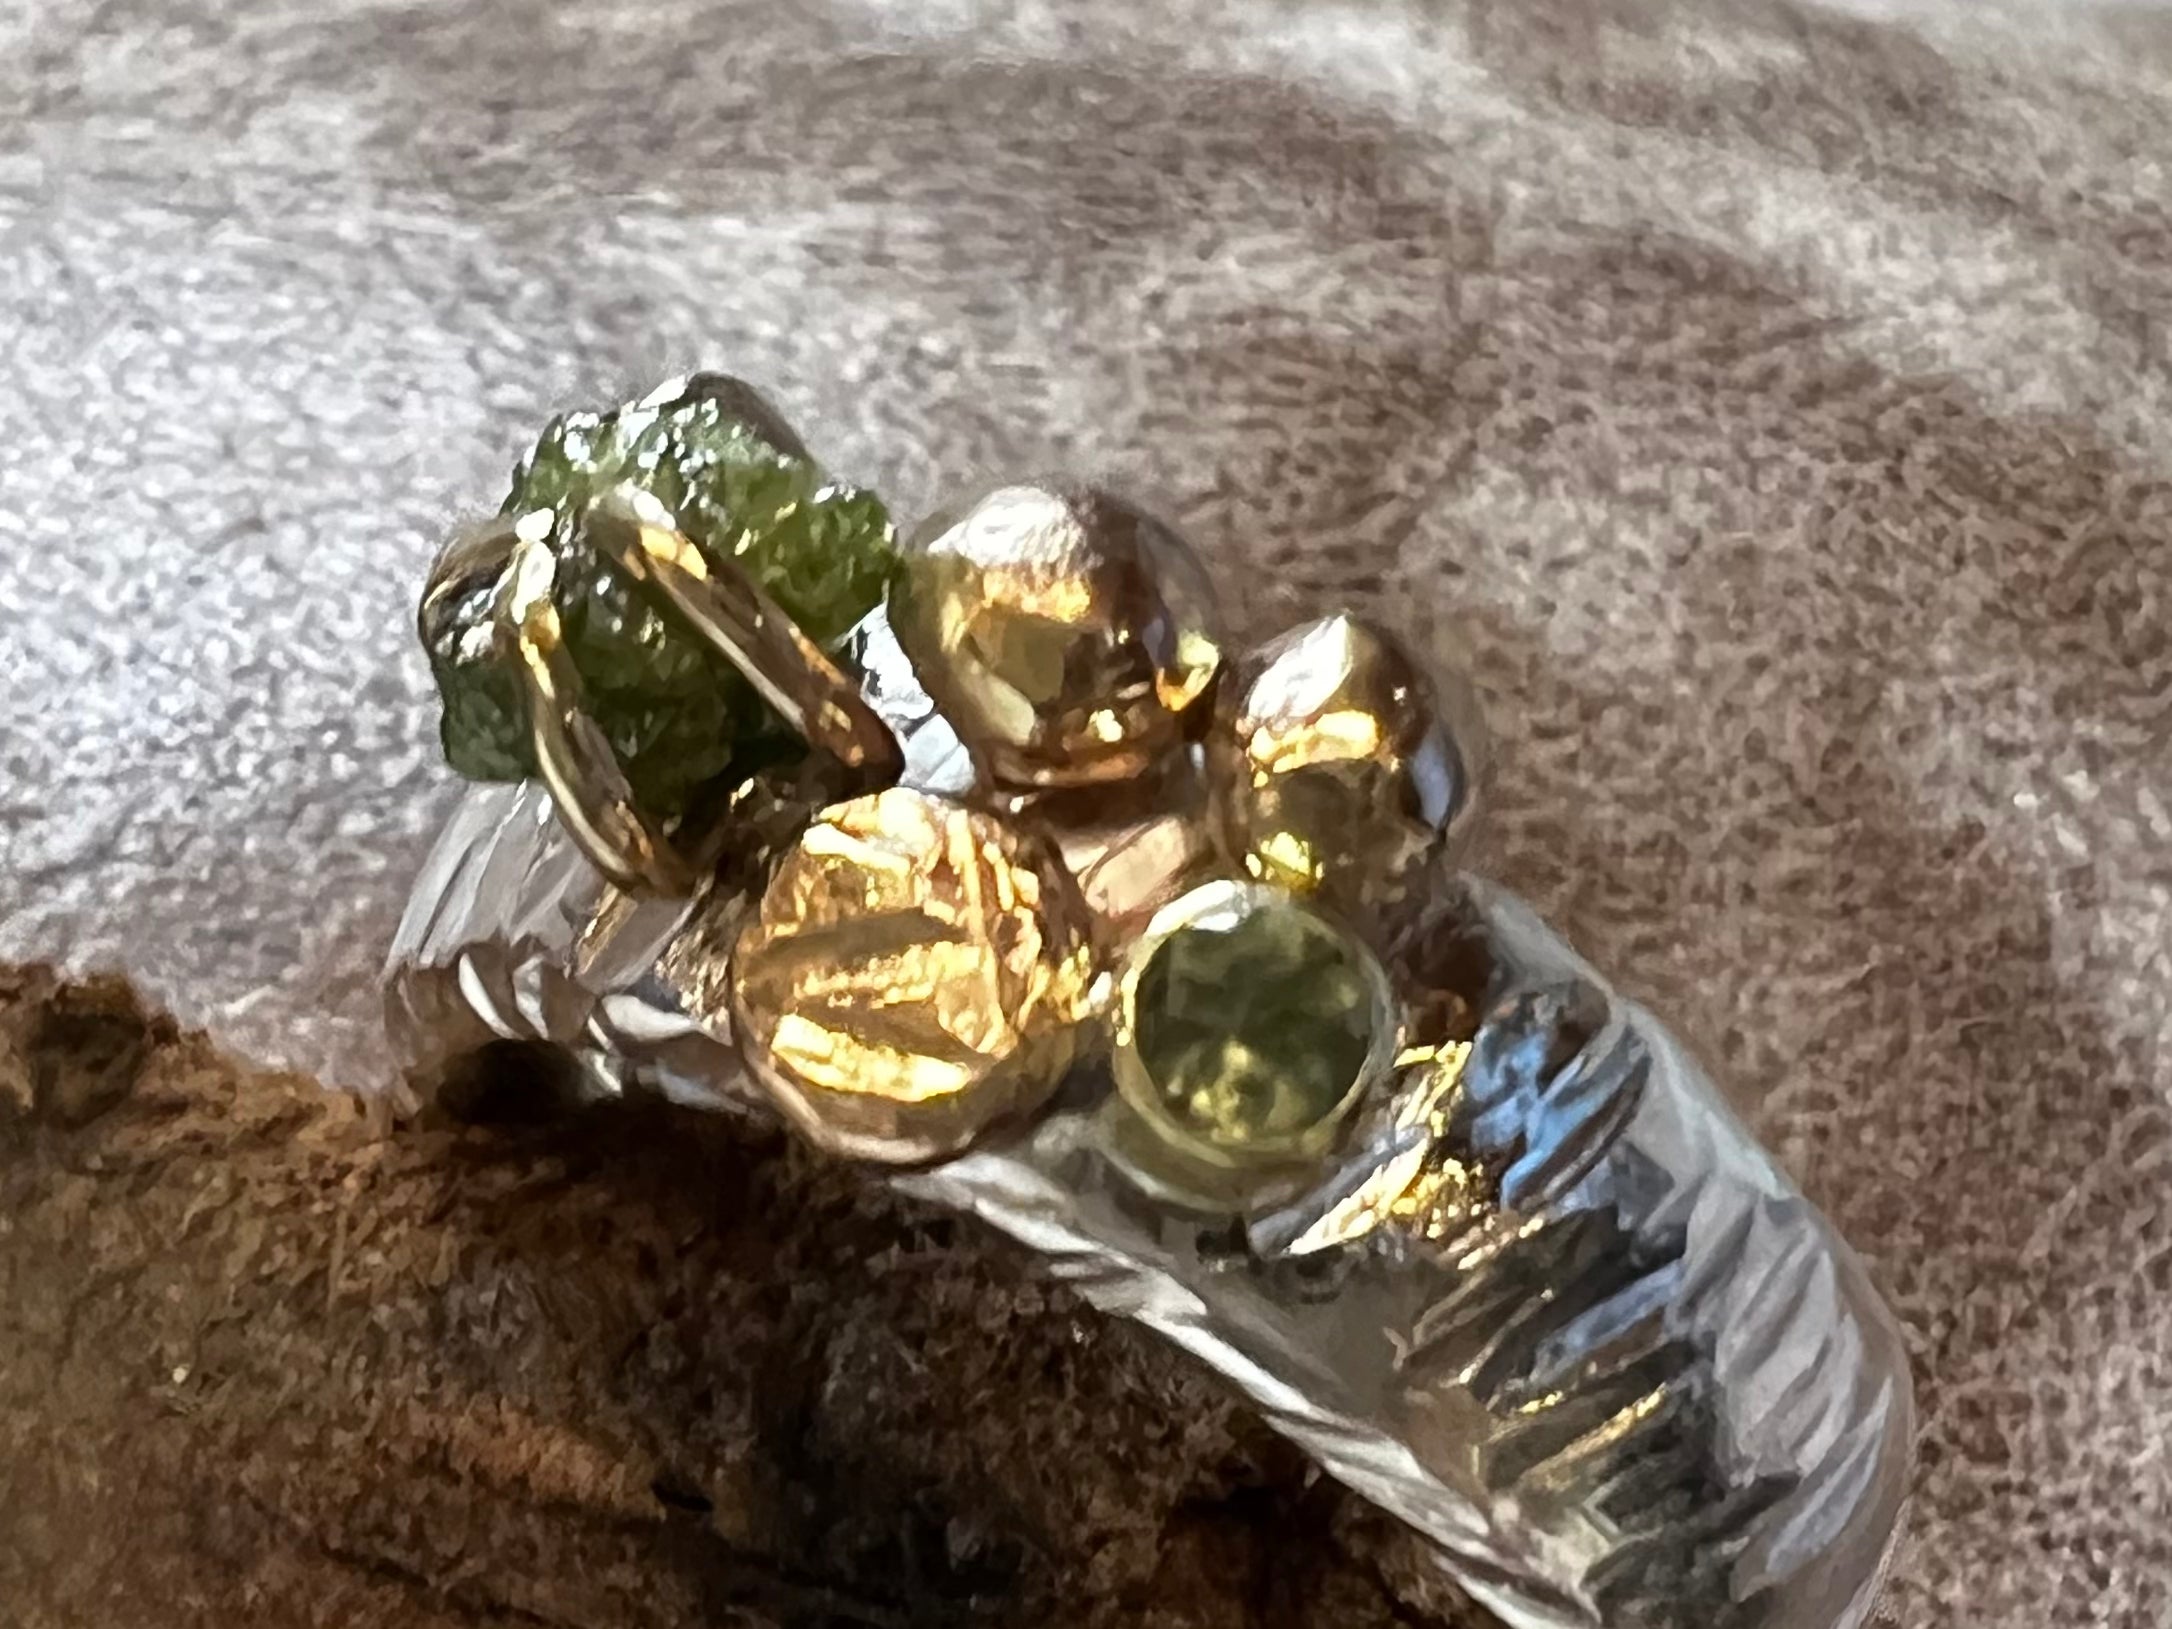 Sølvring med grøn rå-diamant og guldkugler